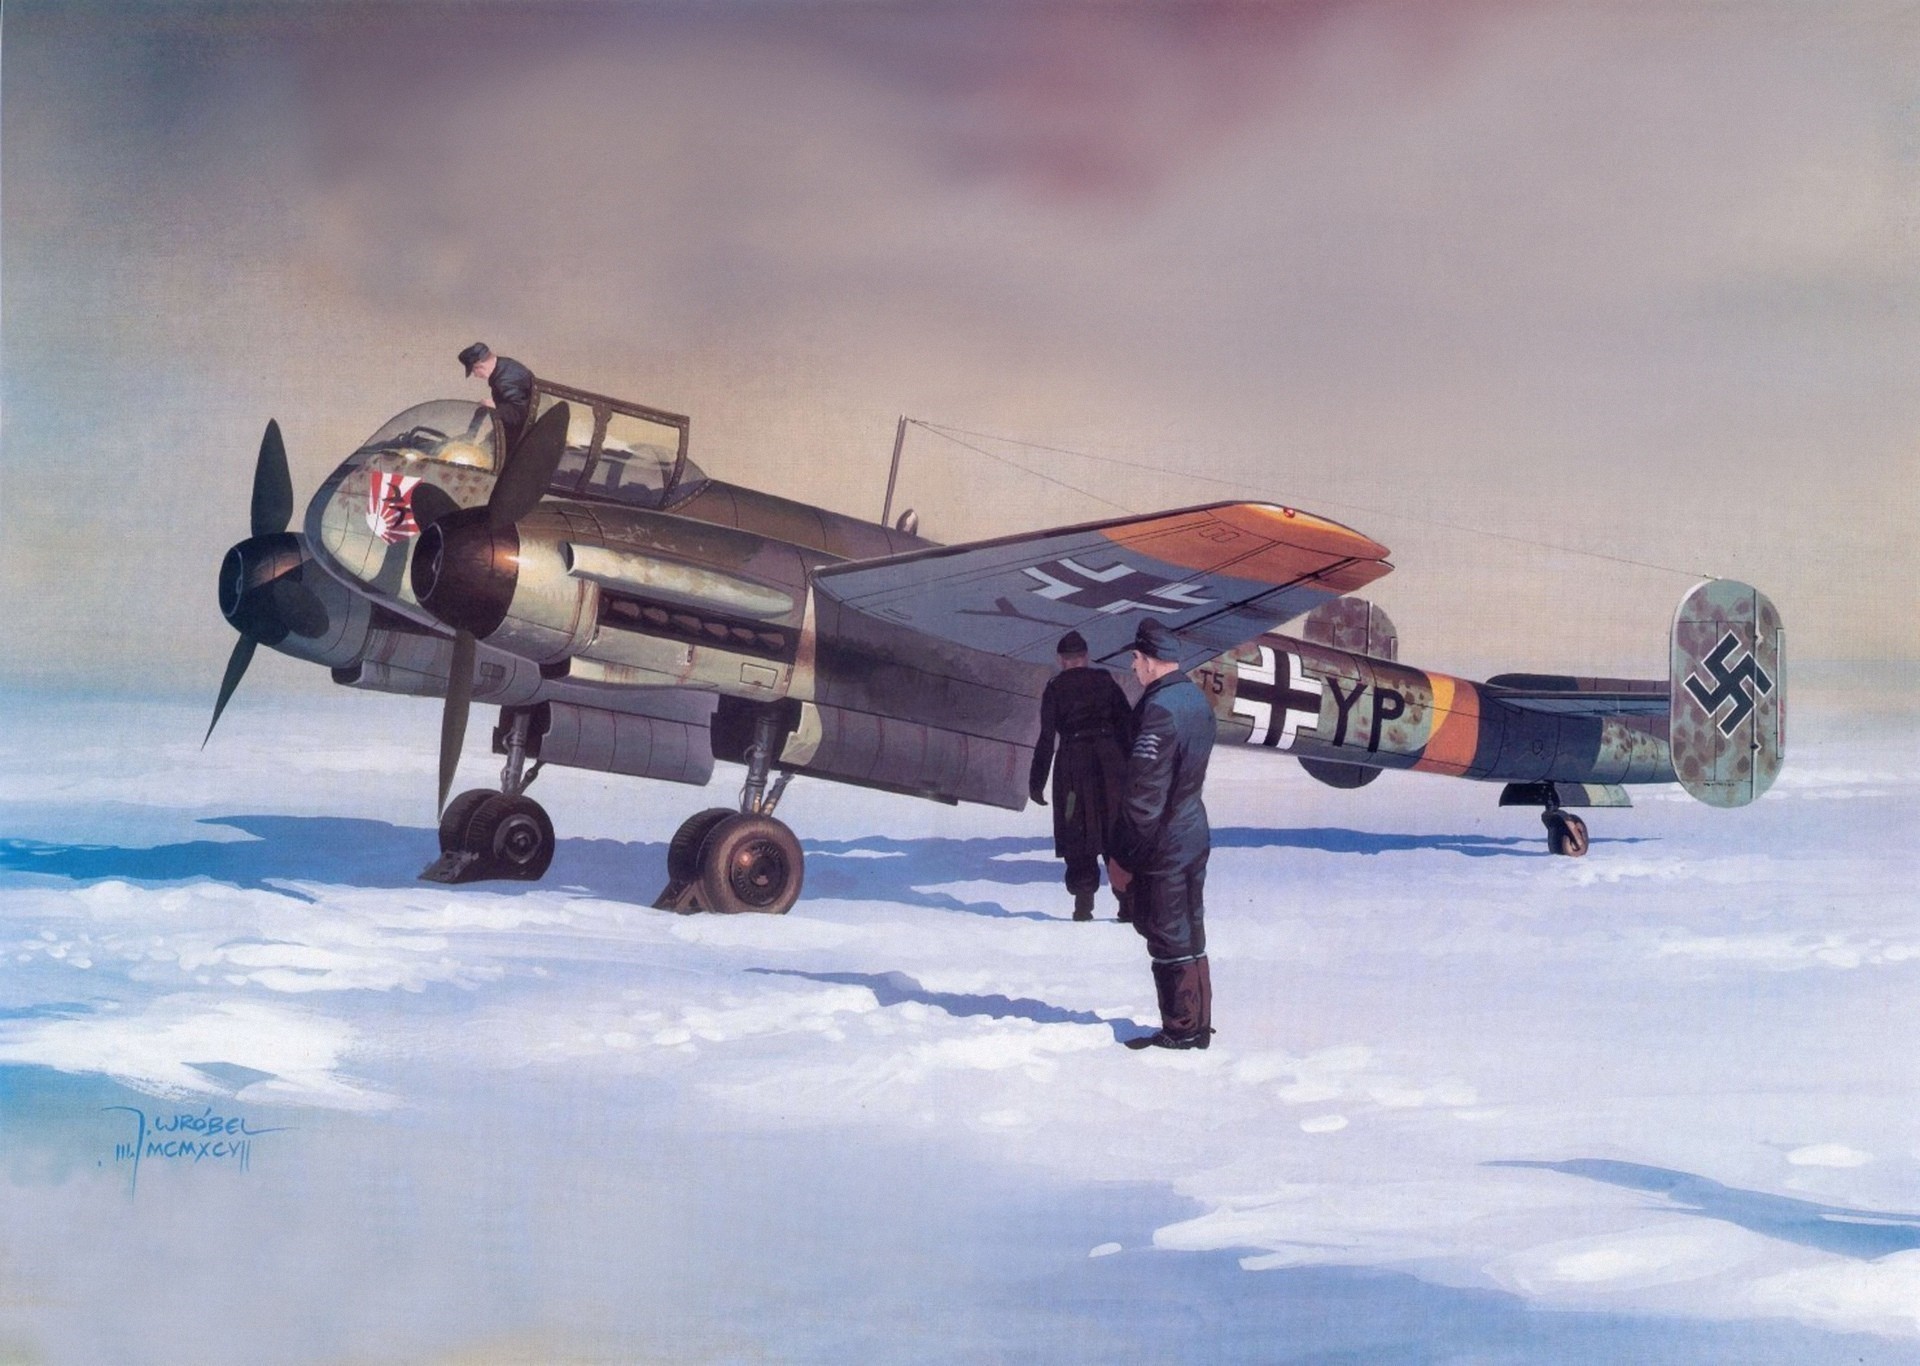 1920x1366 1920x1080 Aircraft military Japanese World War II Warbird British fighters  wallpaper | | 194270 | WallpaperUP